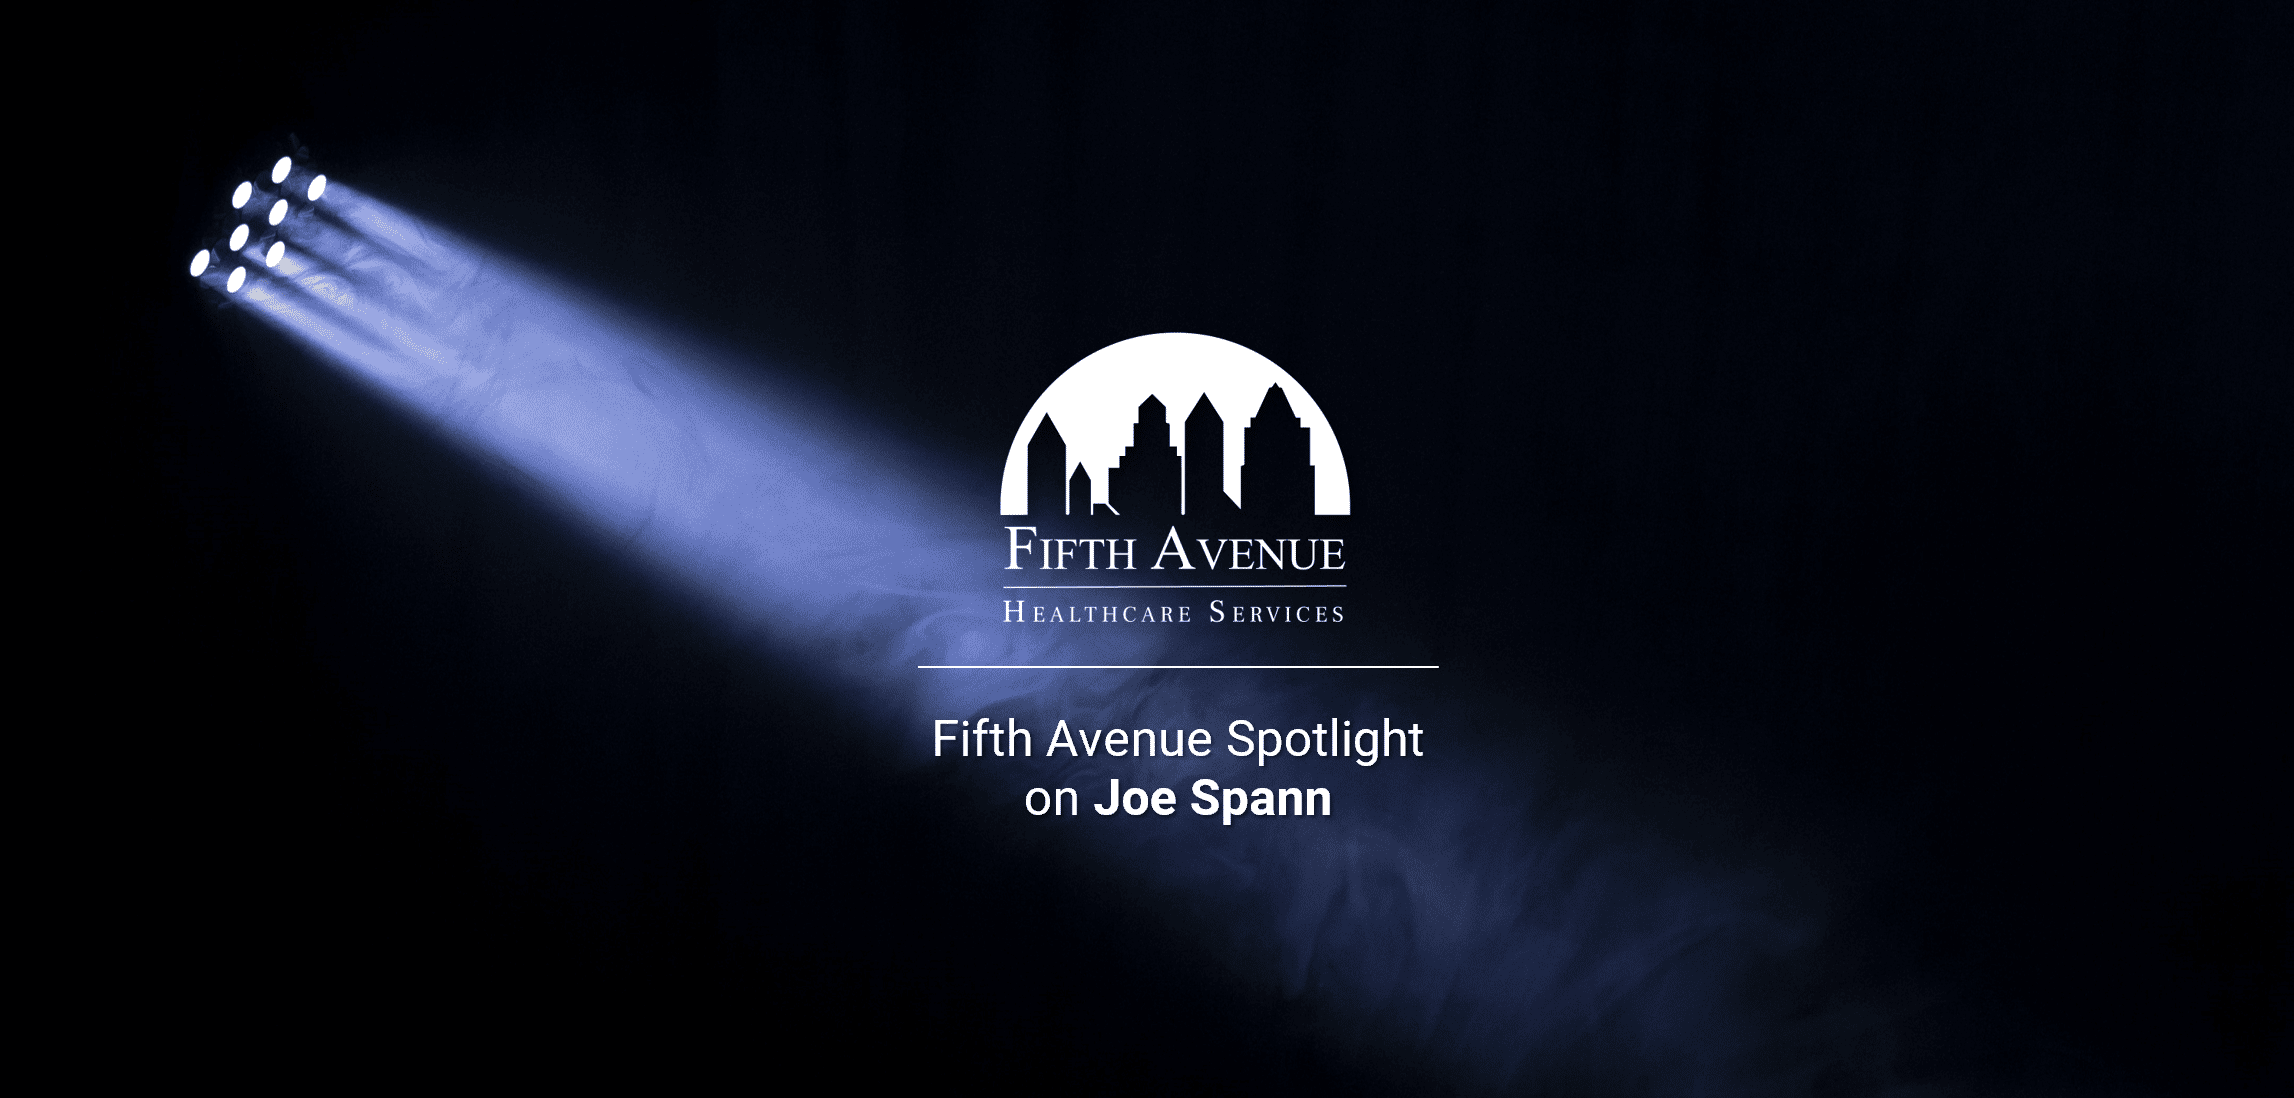 Fifth Avenue Spotlight on Joe Spann